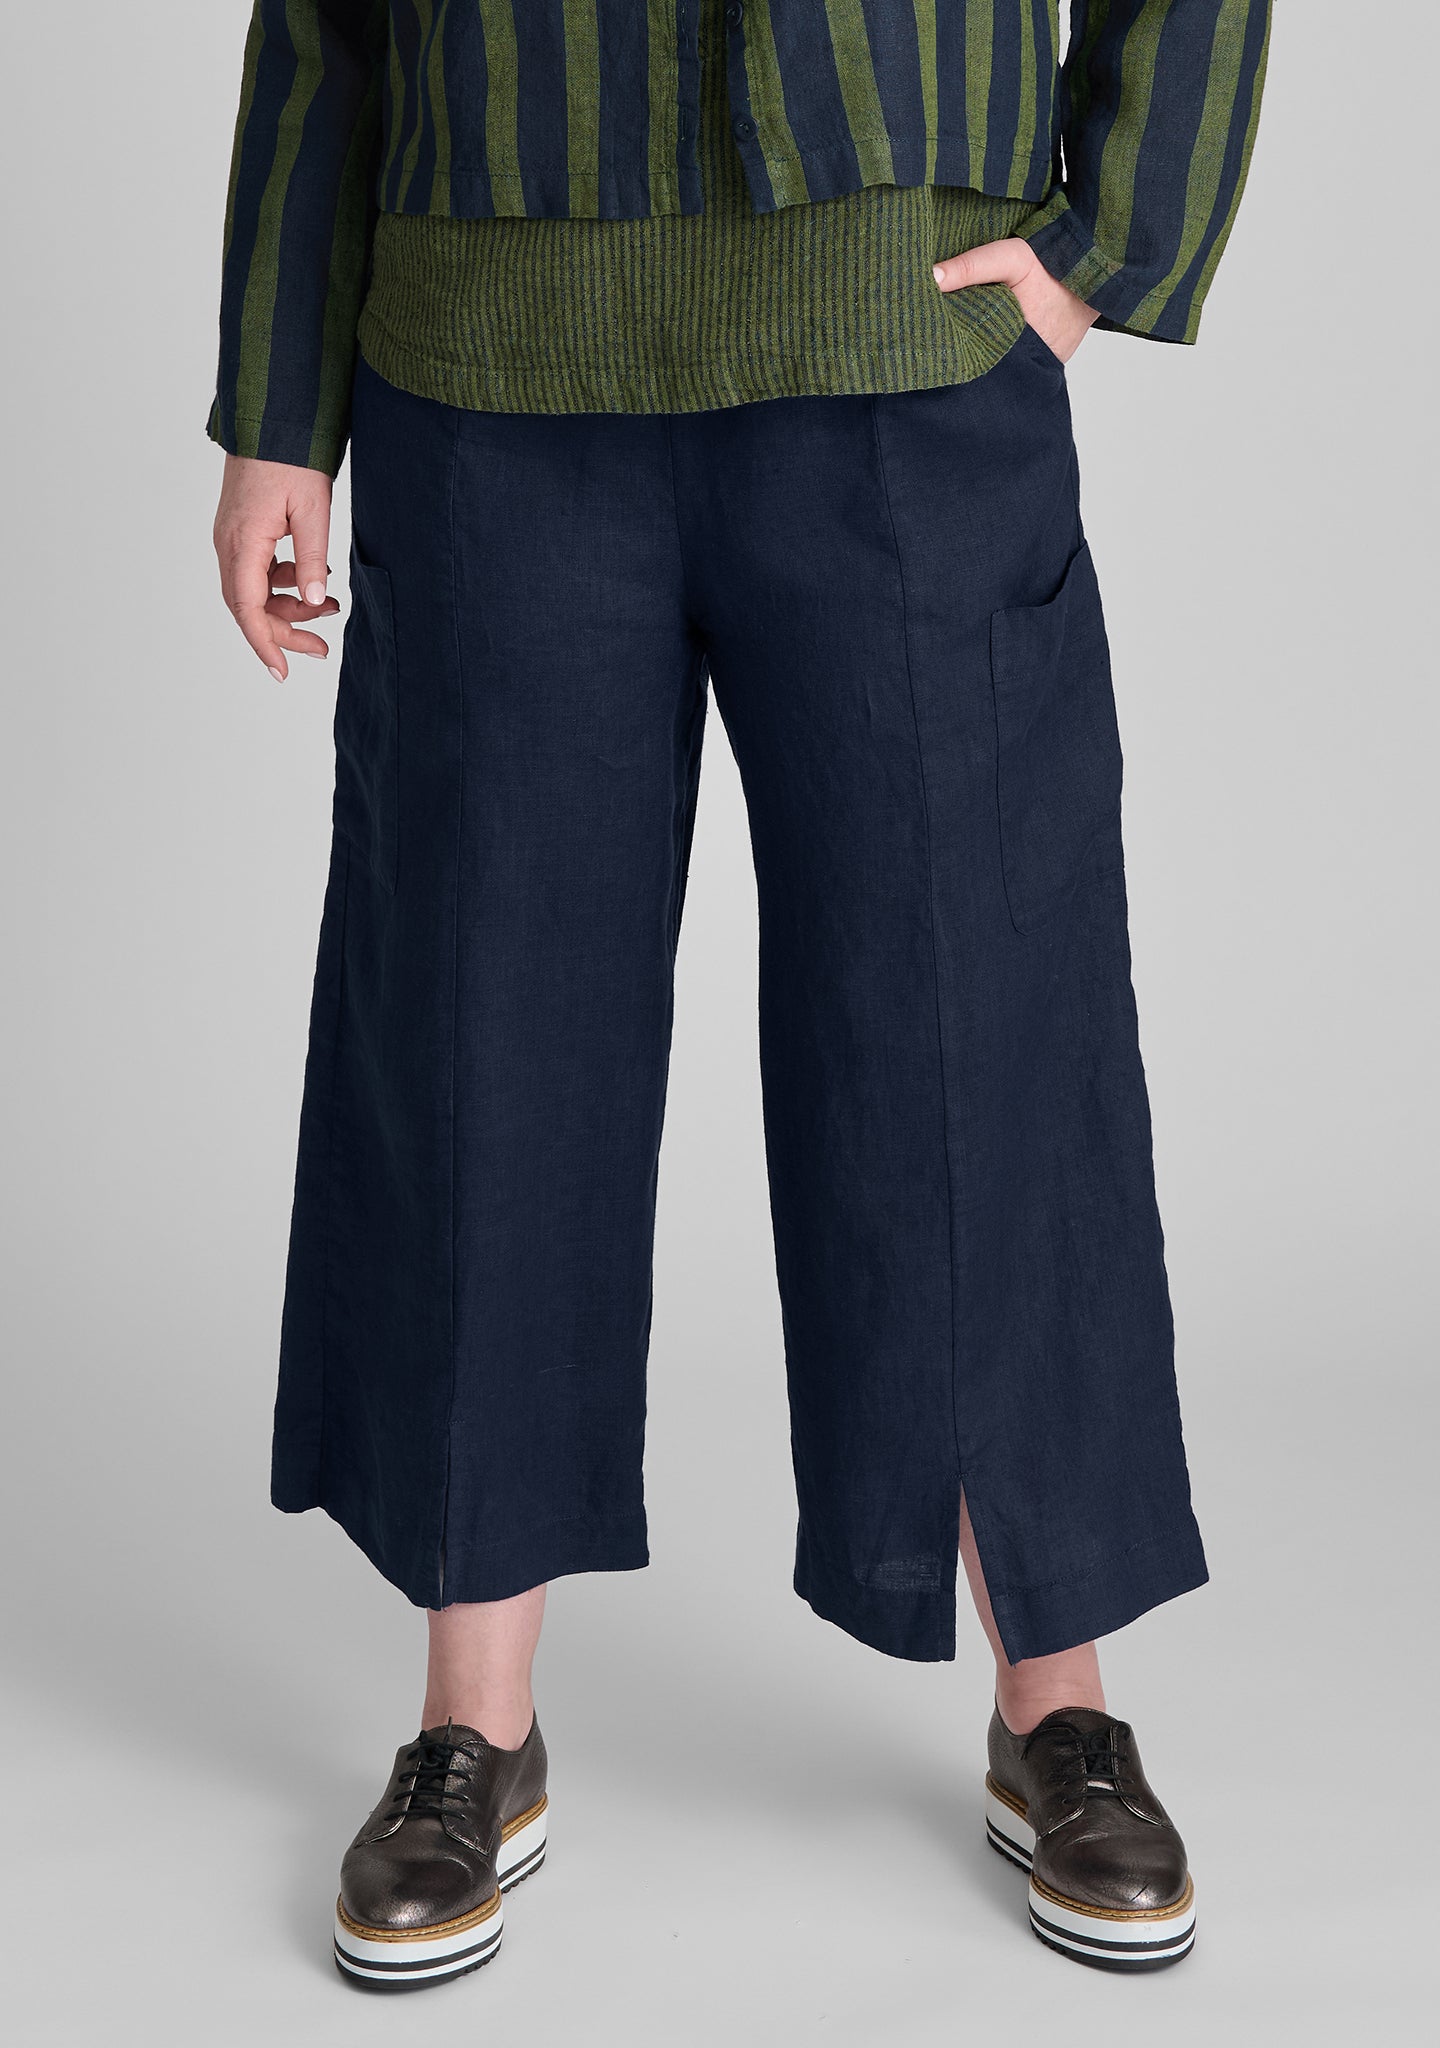 modern flood linen pants with elastic waist blue